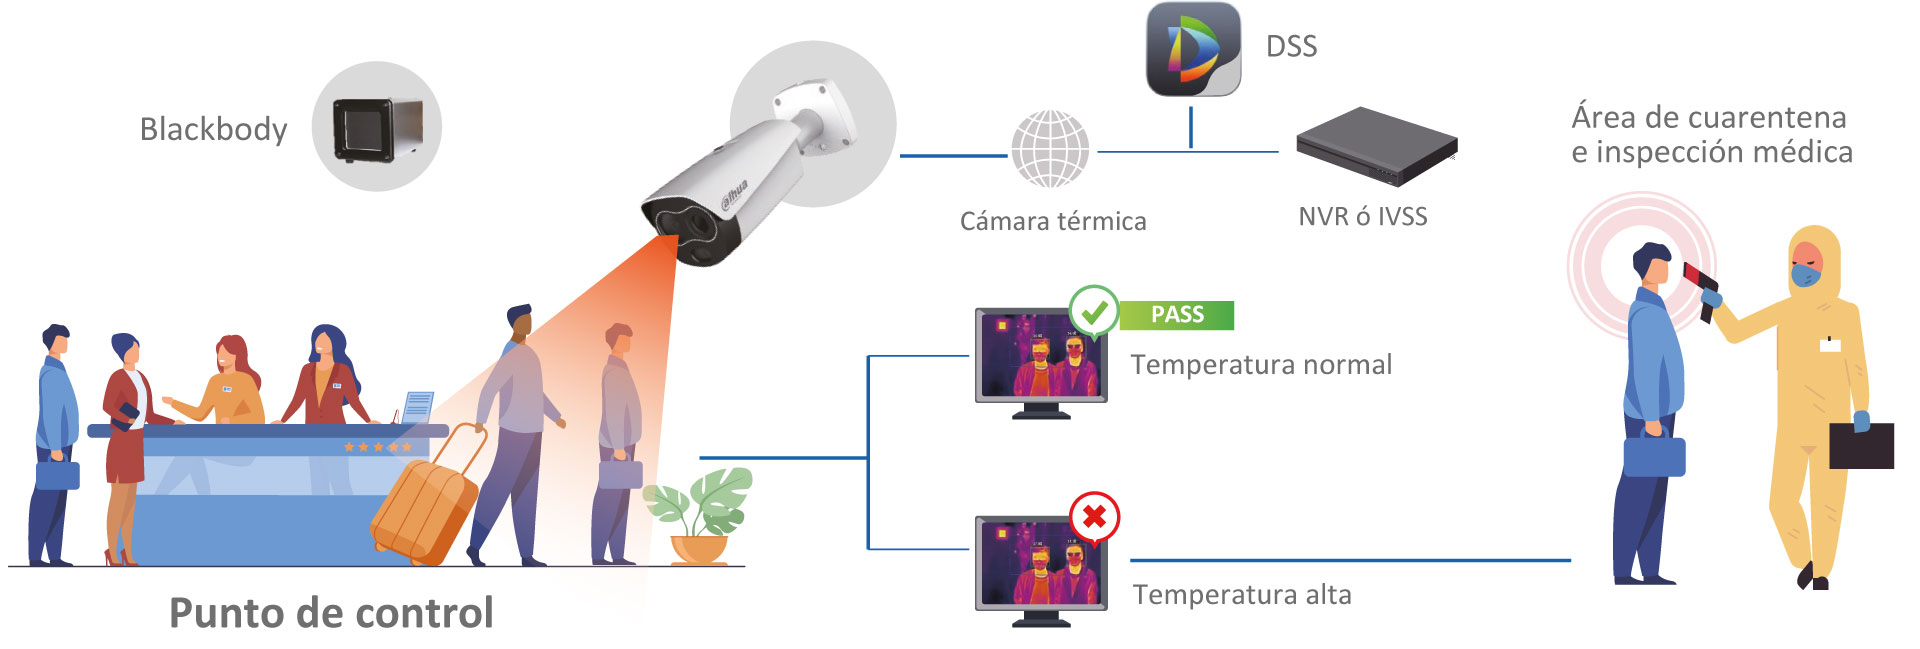 La solución térmica para medir la temperatura del cuerpo humano de Dahua